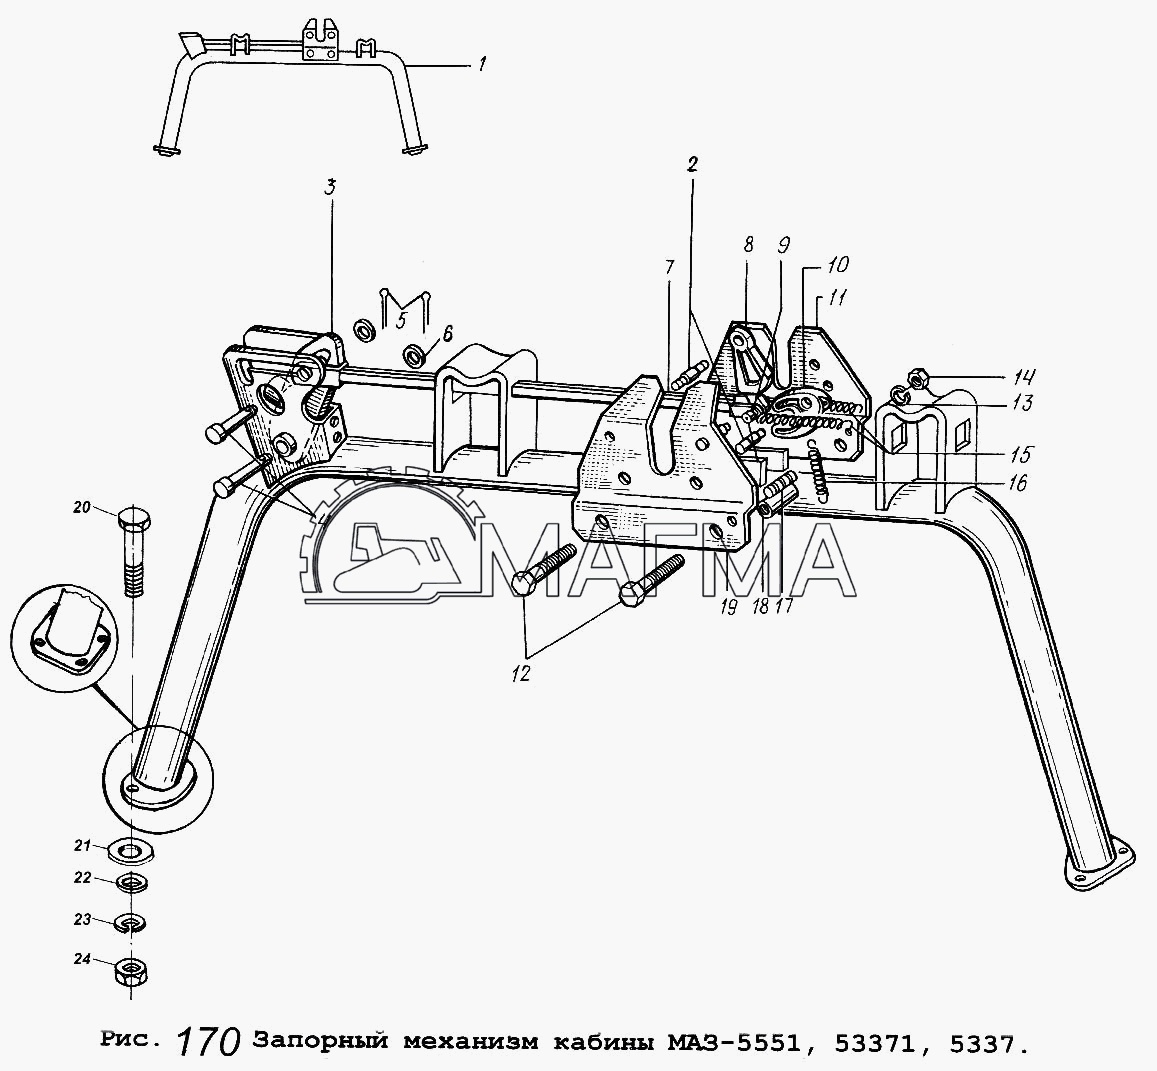 4122-210 — компрессор камаз (поставляется на конвейер камаз)